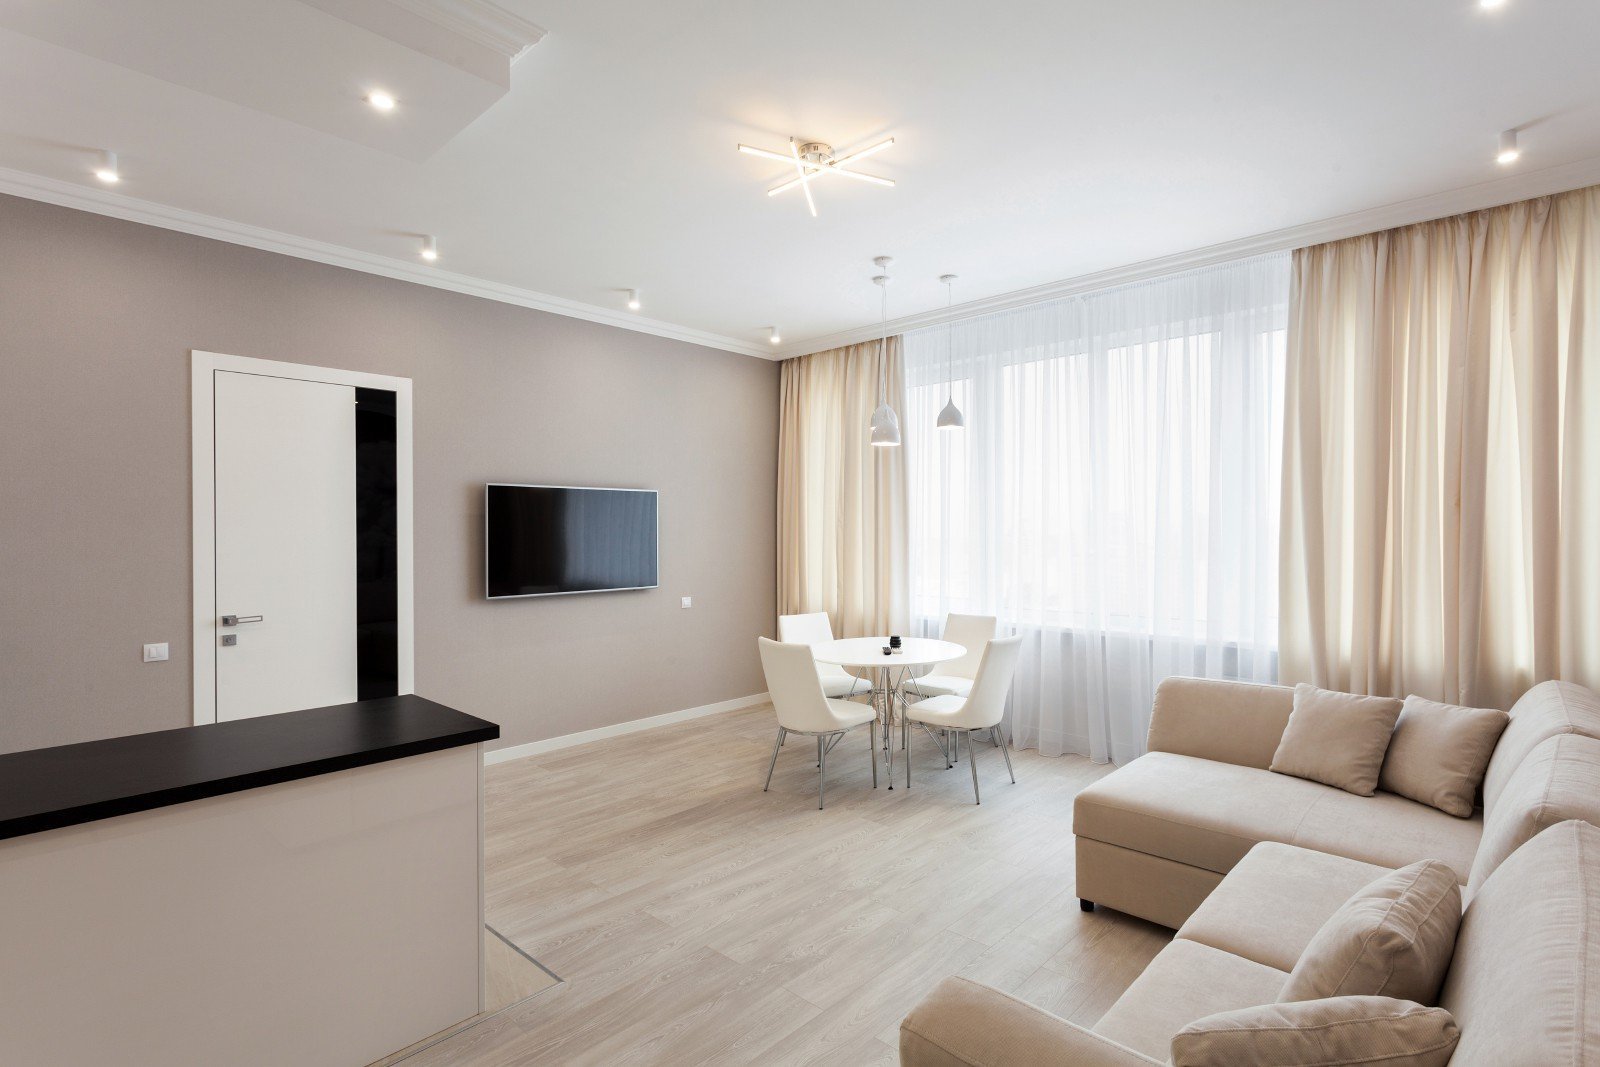 Недорогие готовые квартиры. Управляемая светодиодная люстра Sonne 100w 4s-app-556x556x80-White/White-220-ip20. Евроремонт квартиры. Квартира в светлых тонах. Евроремонт однокомнатной квартиры.